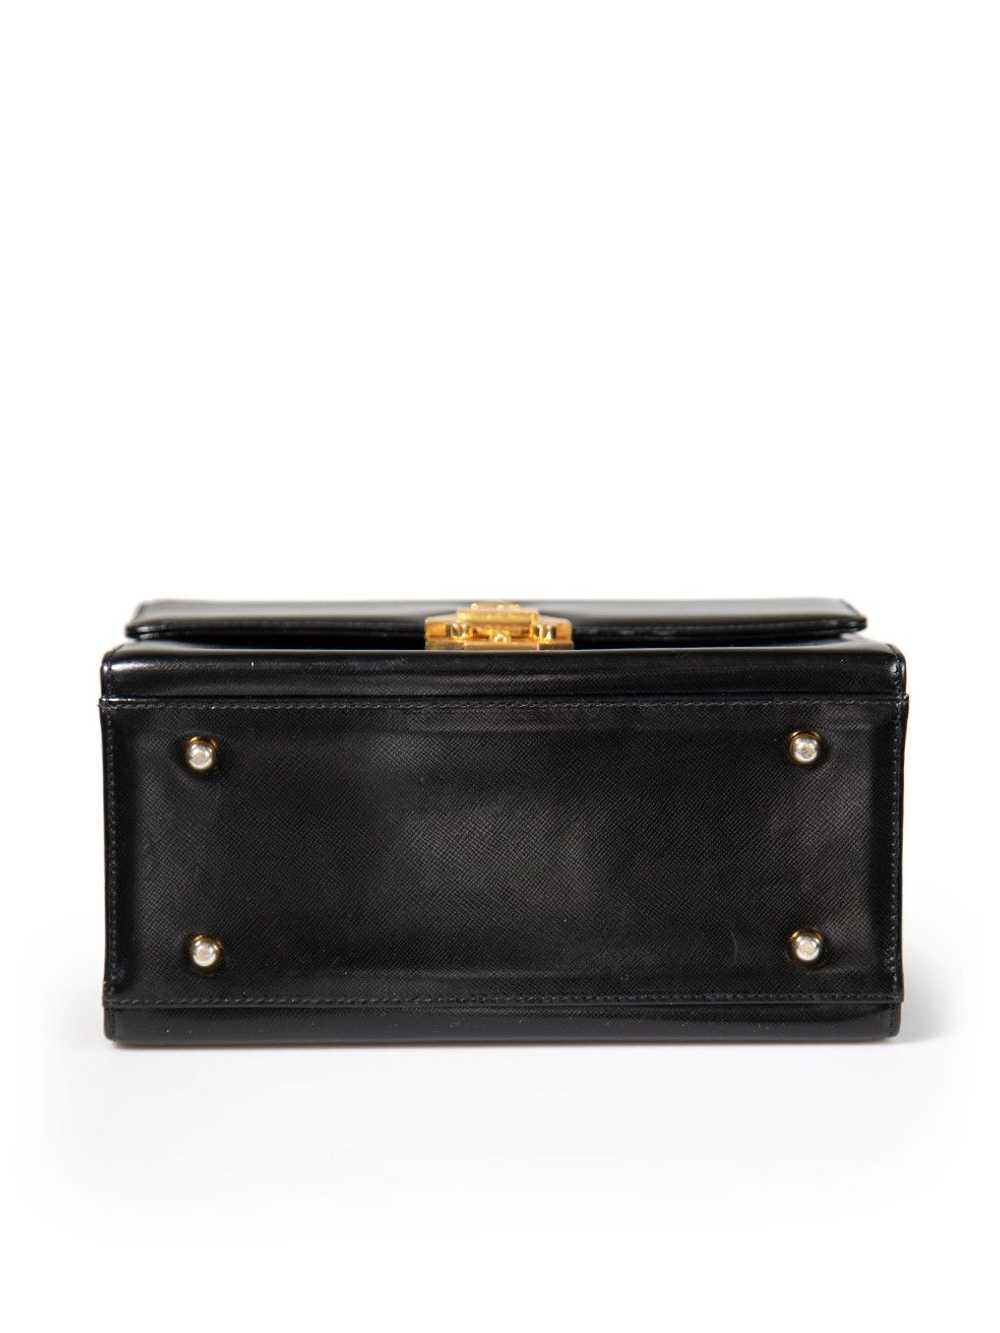 Versace Black Leather Vanity Top Handle Bag - image 4